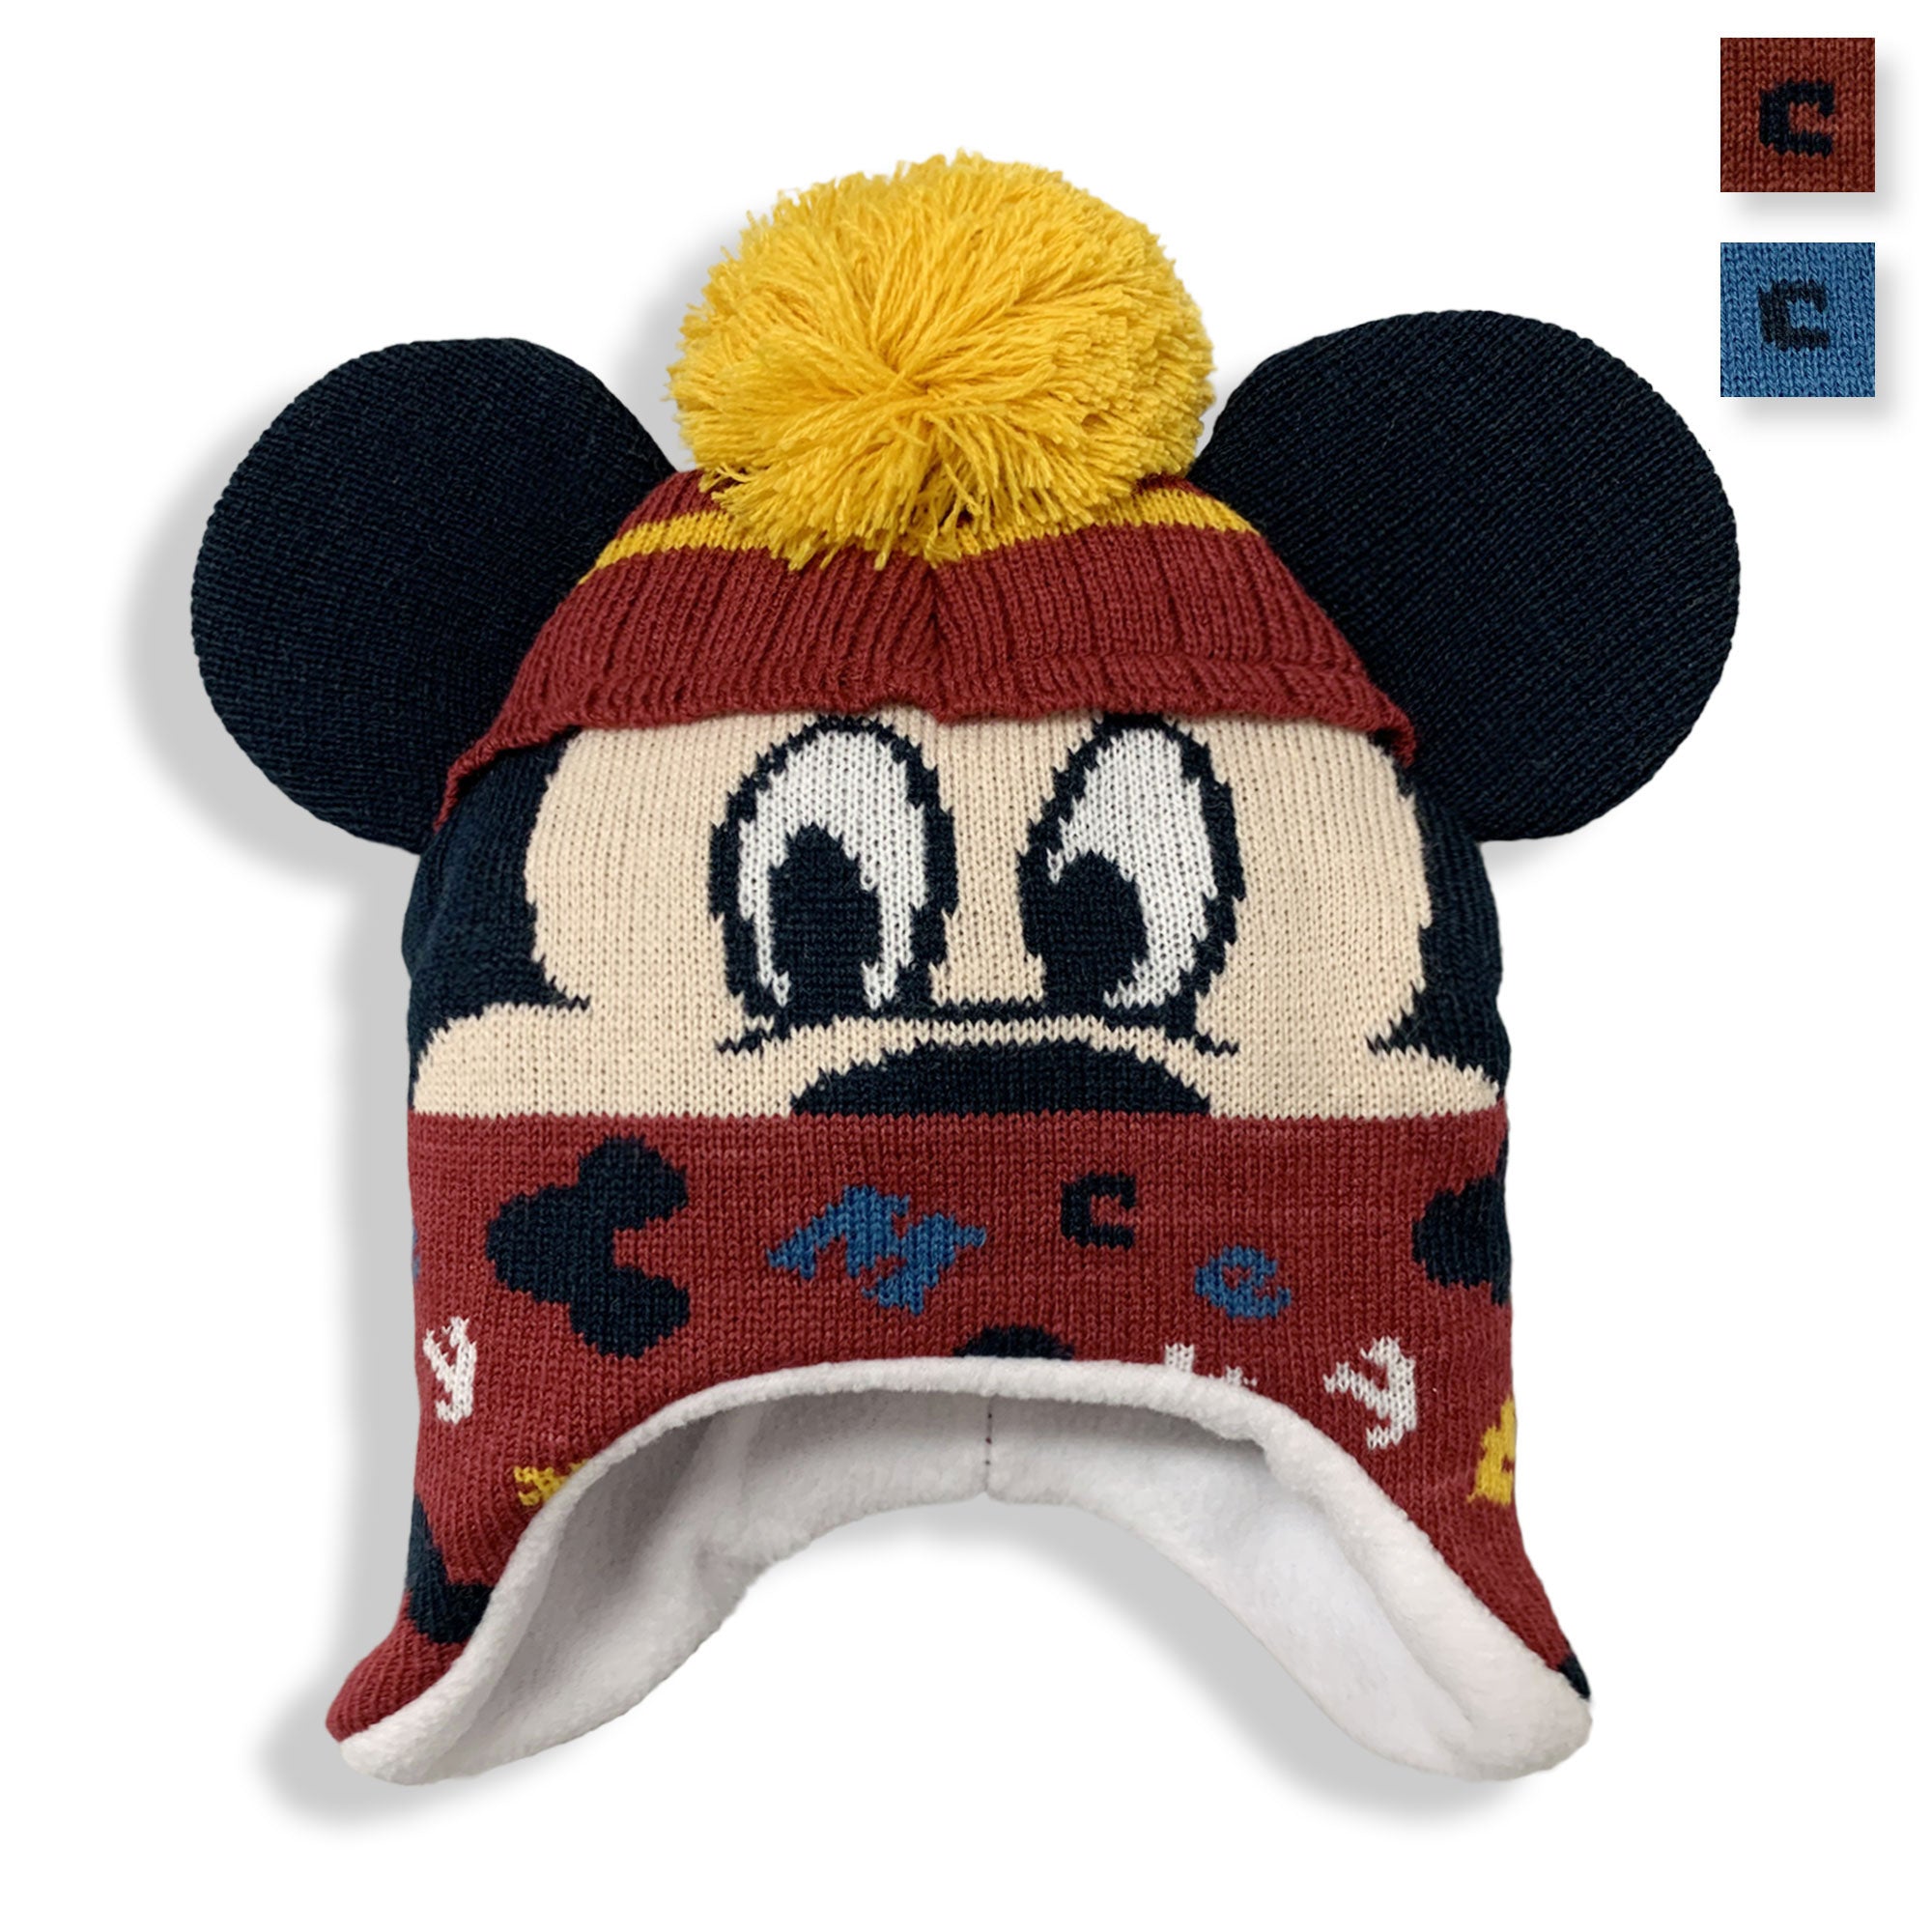 Cappello Disney Mickey Mouse invernale cappellino neonato bimbo 5898